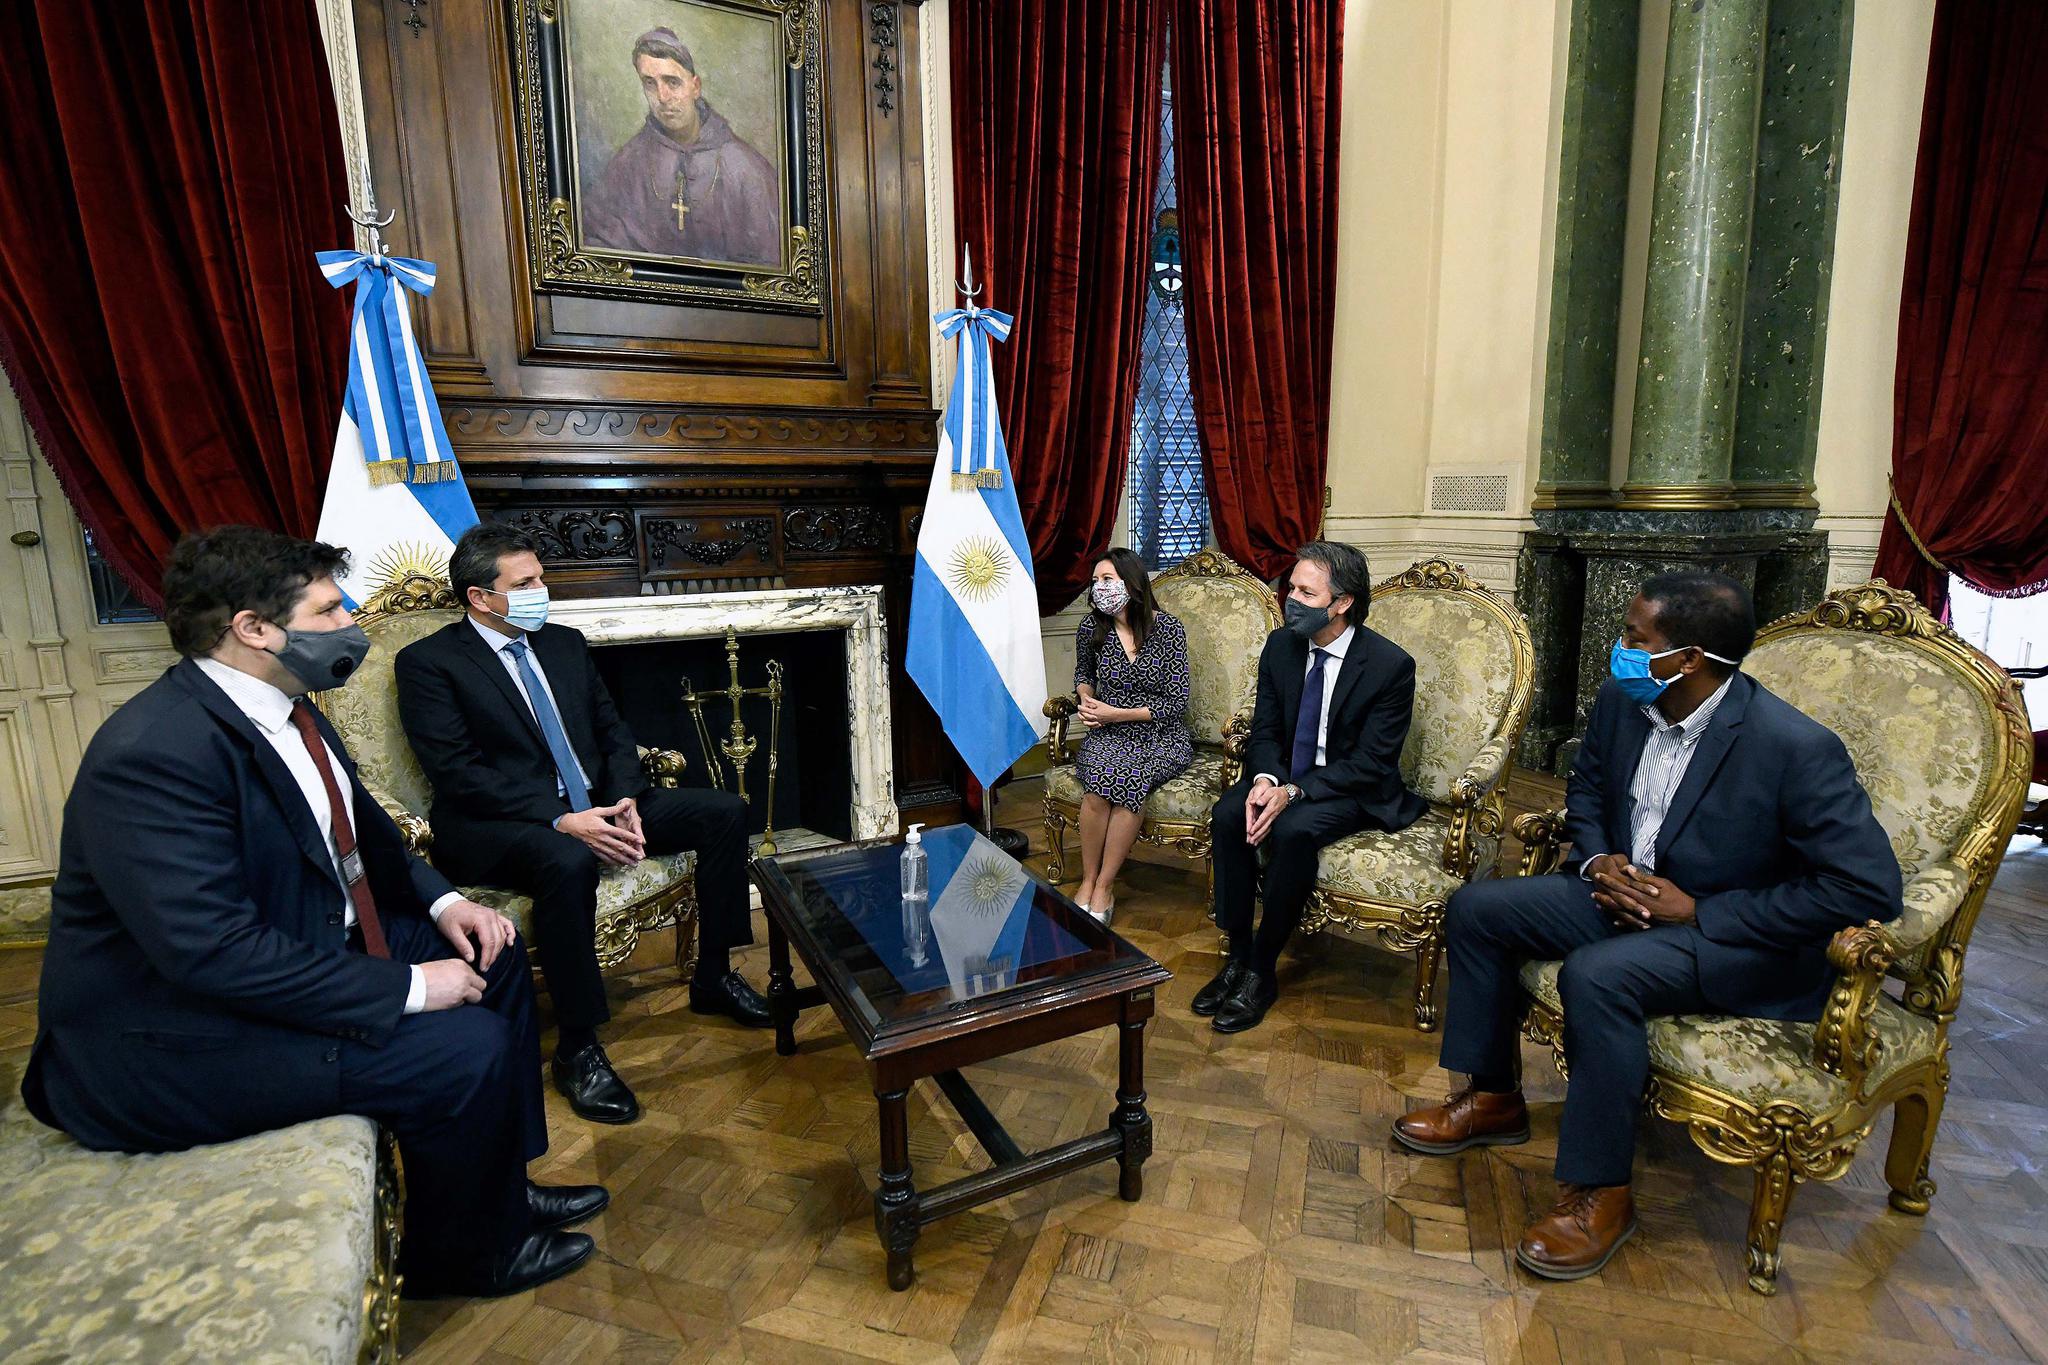 阿根廷新冠肺炎累计病例超131万 一国际货币基金组织谈判官员检测呈